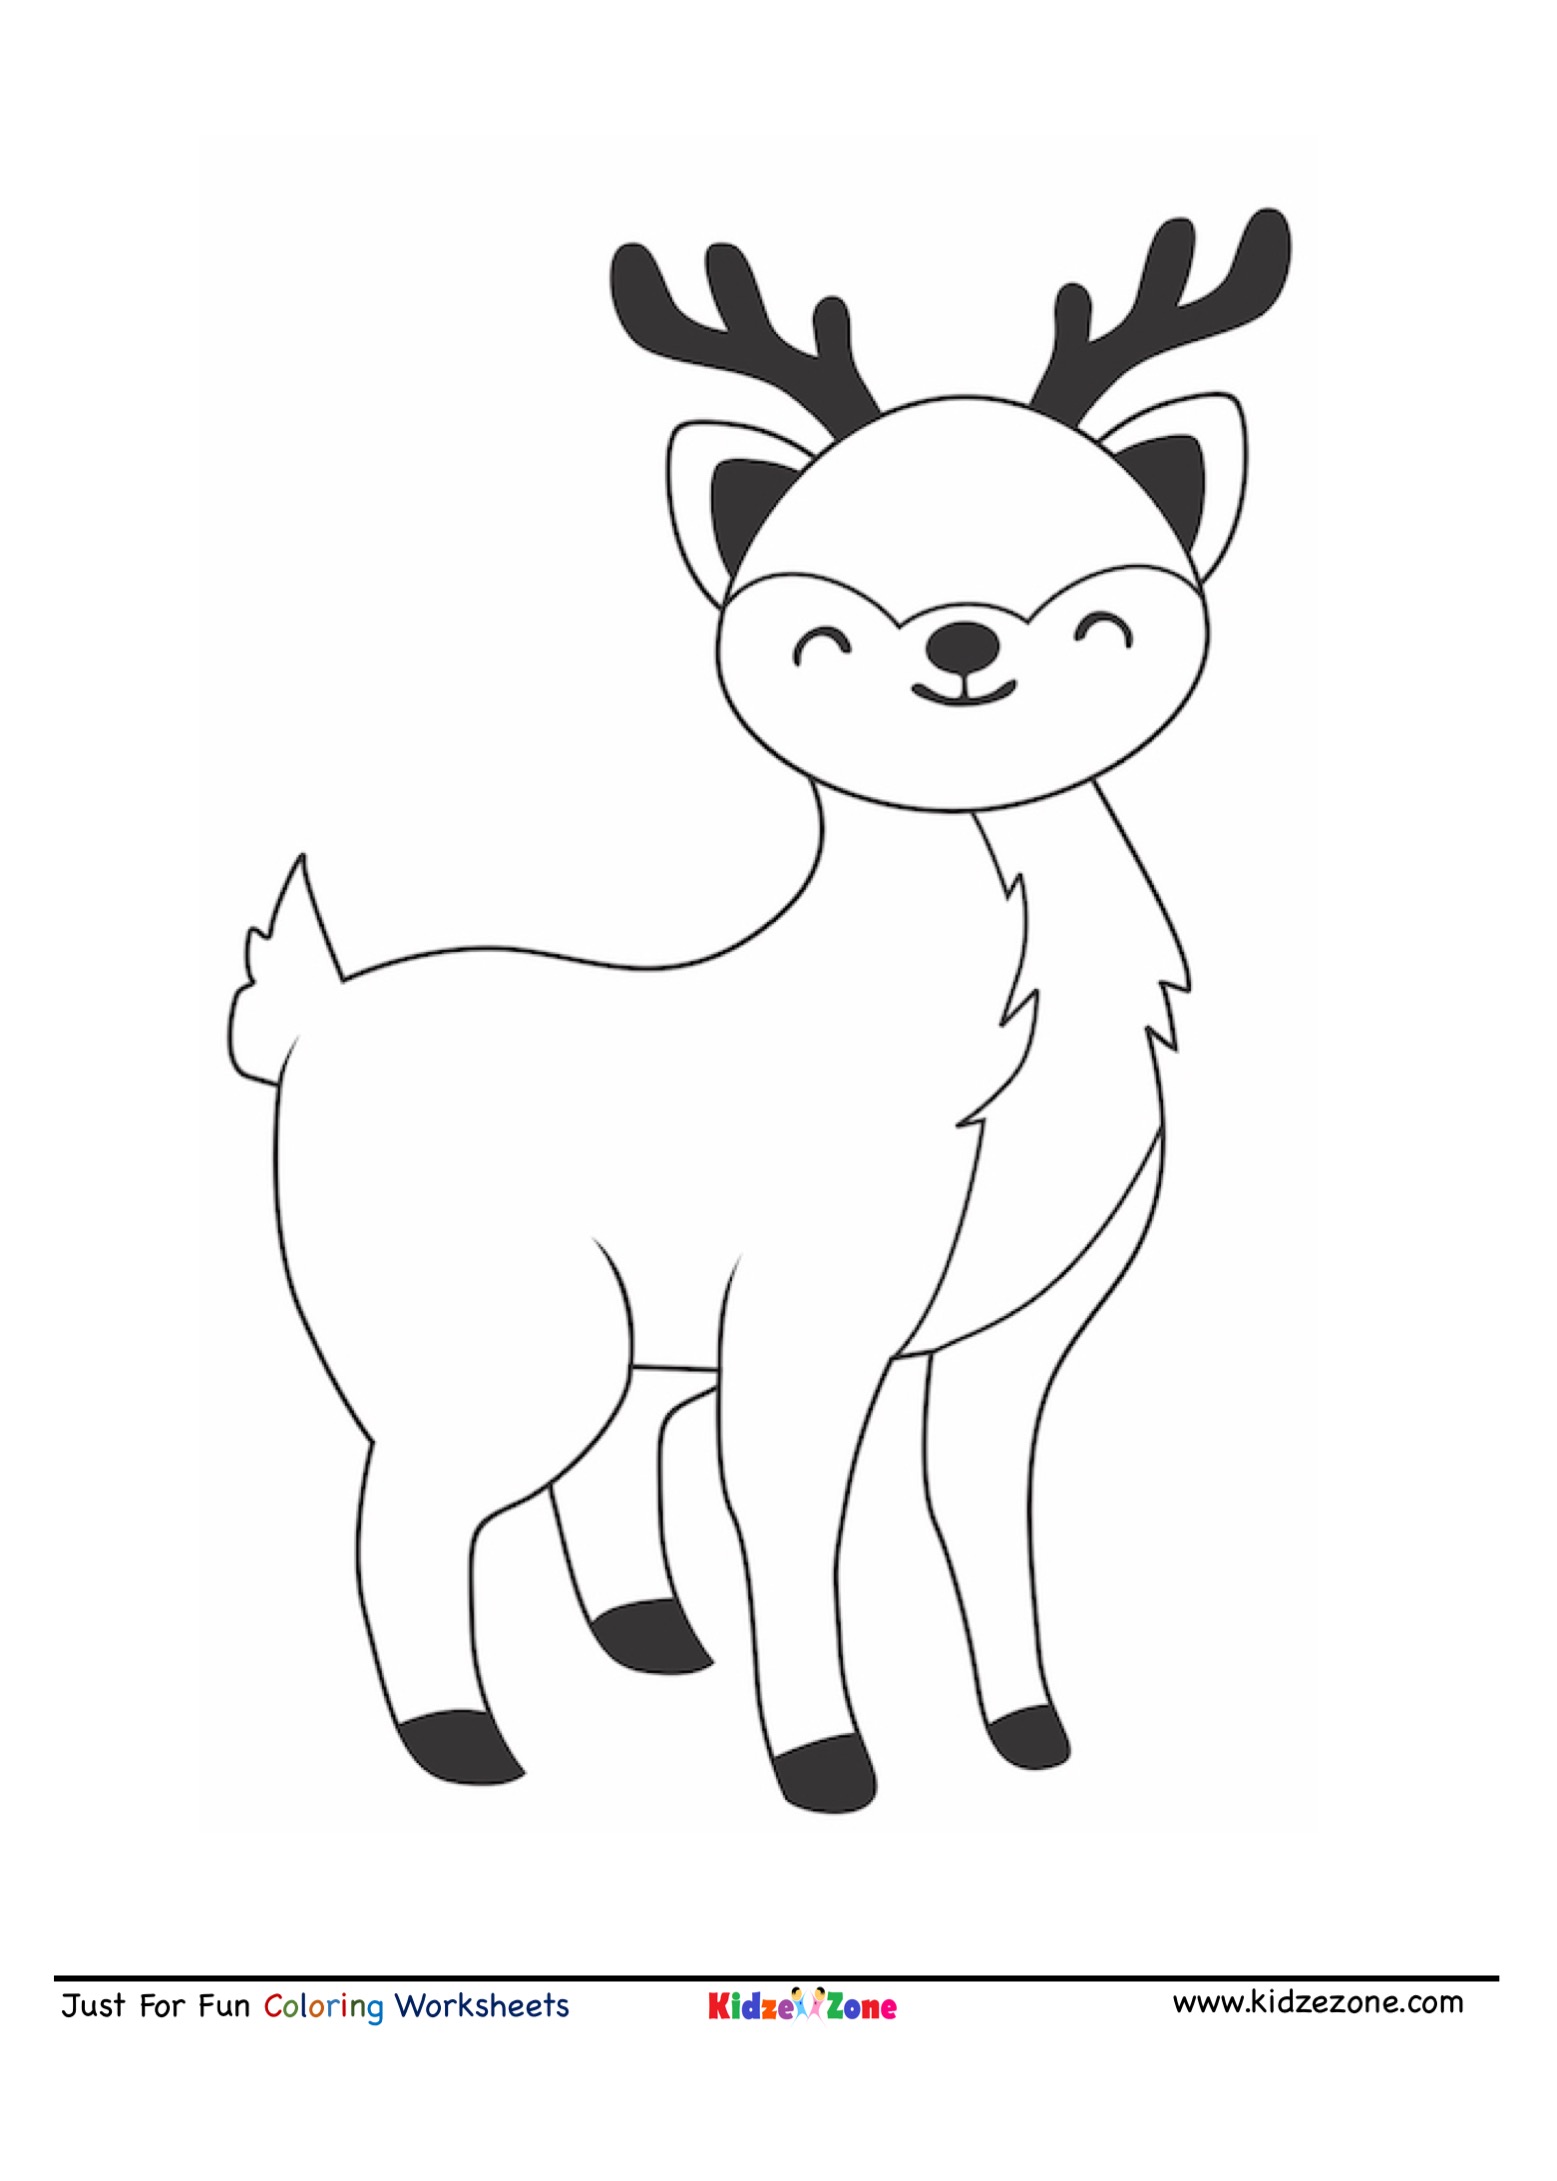 Reindeer coloring sheet   KidzeZone